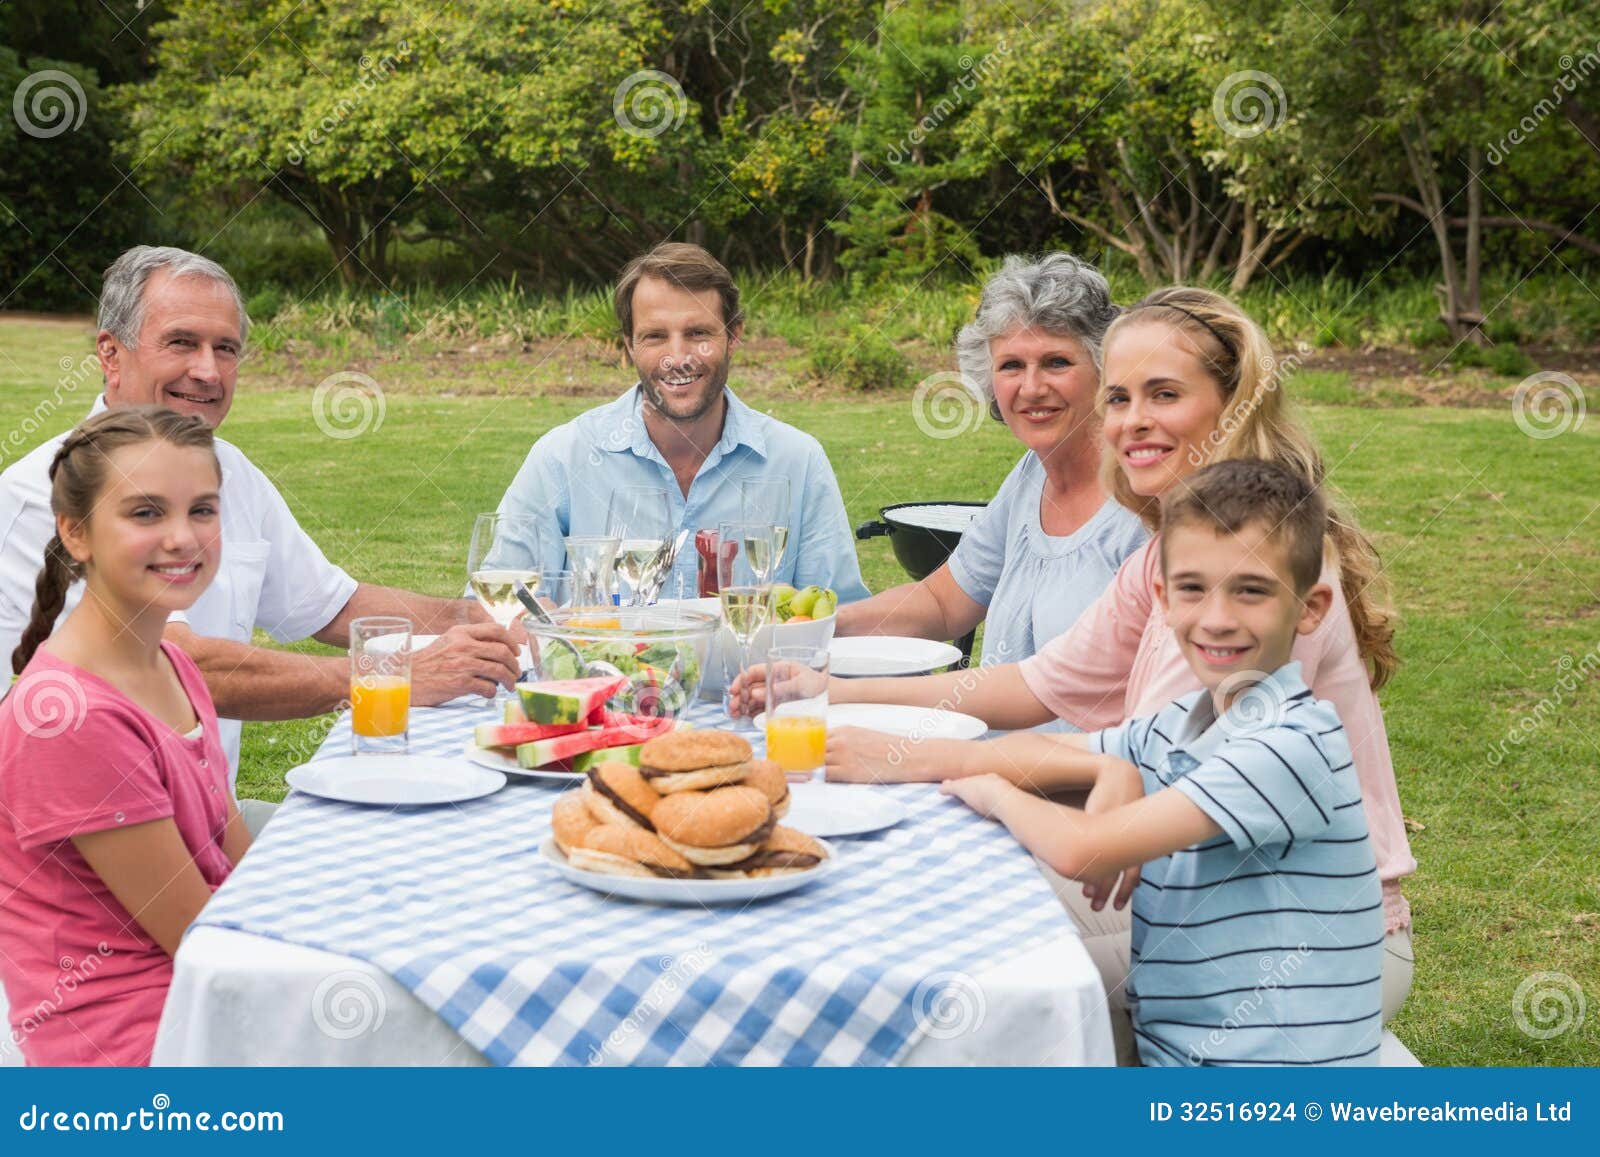 Multi Generation Family Having Dinner Outside At Picnic ...